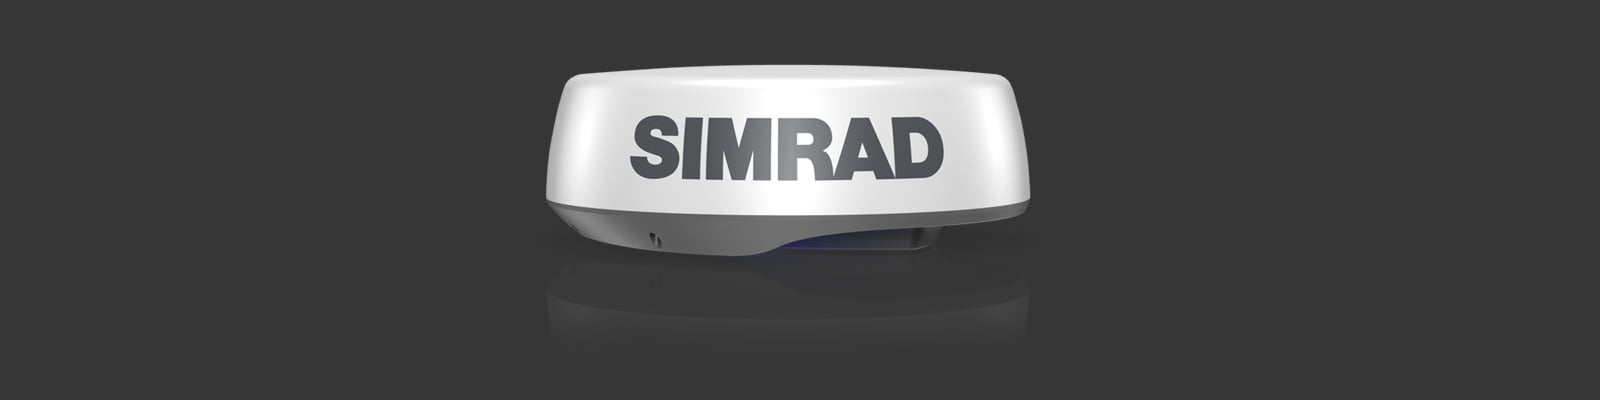 Kartplotter SIMRAD GO9 XSE med Active Imaging 9 m3i1svinger 00014841001